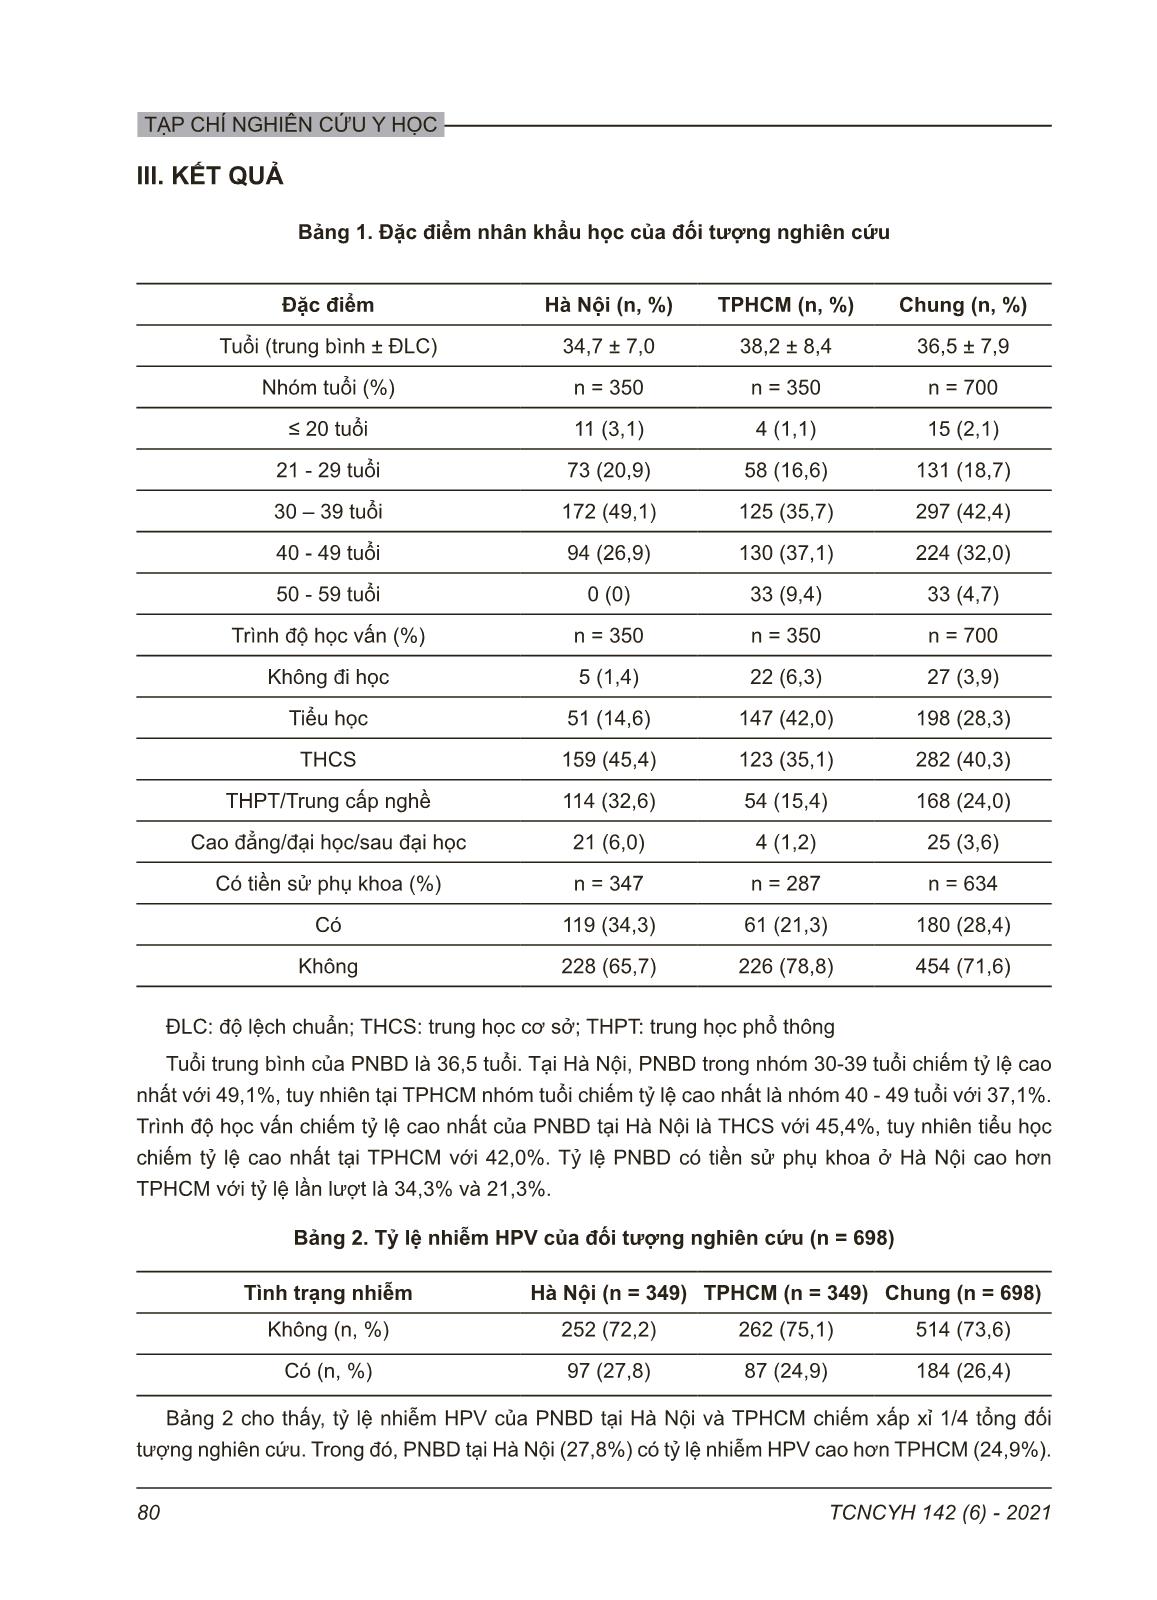 Tỷ lệ nhiễm hpv và kết quả xét nghiệm thinprep pap của phụ nữ bán dâm ở Hà nội và thành phố Hồ Chí Minh năm 2018 trang 3